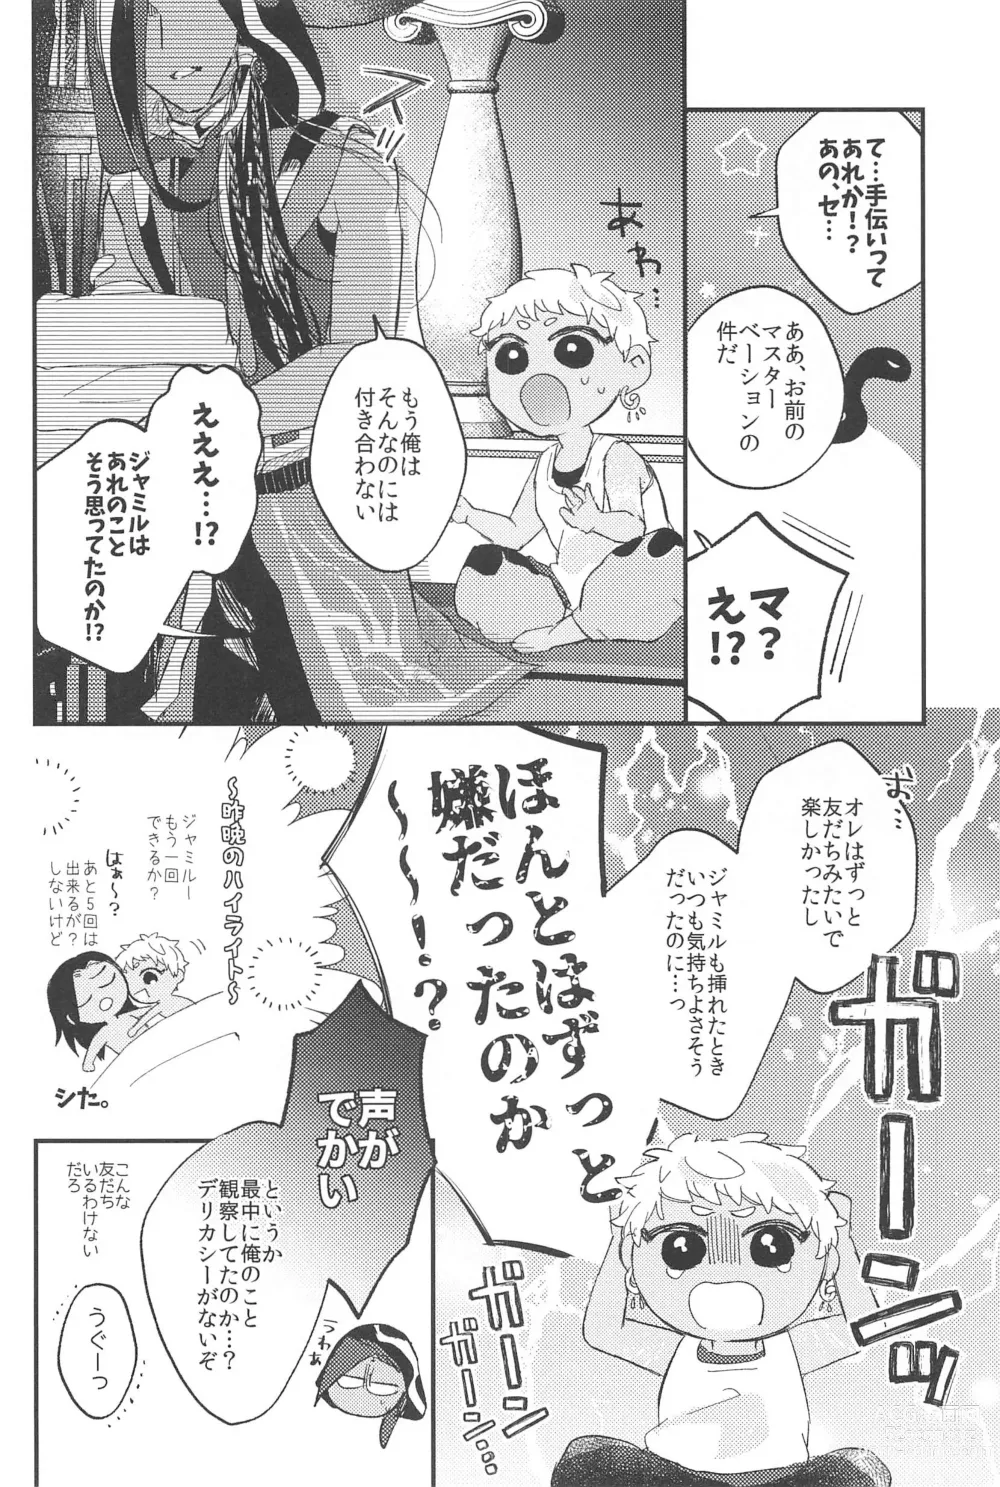 Page 5 of doujinshi Kantan dakara Muzukashii